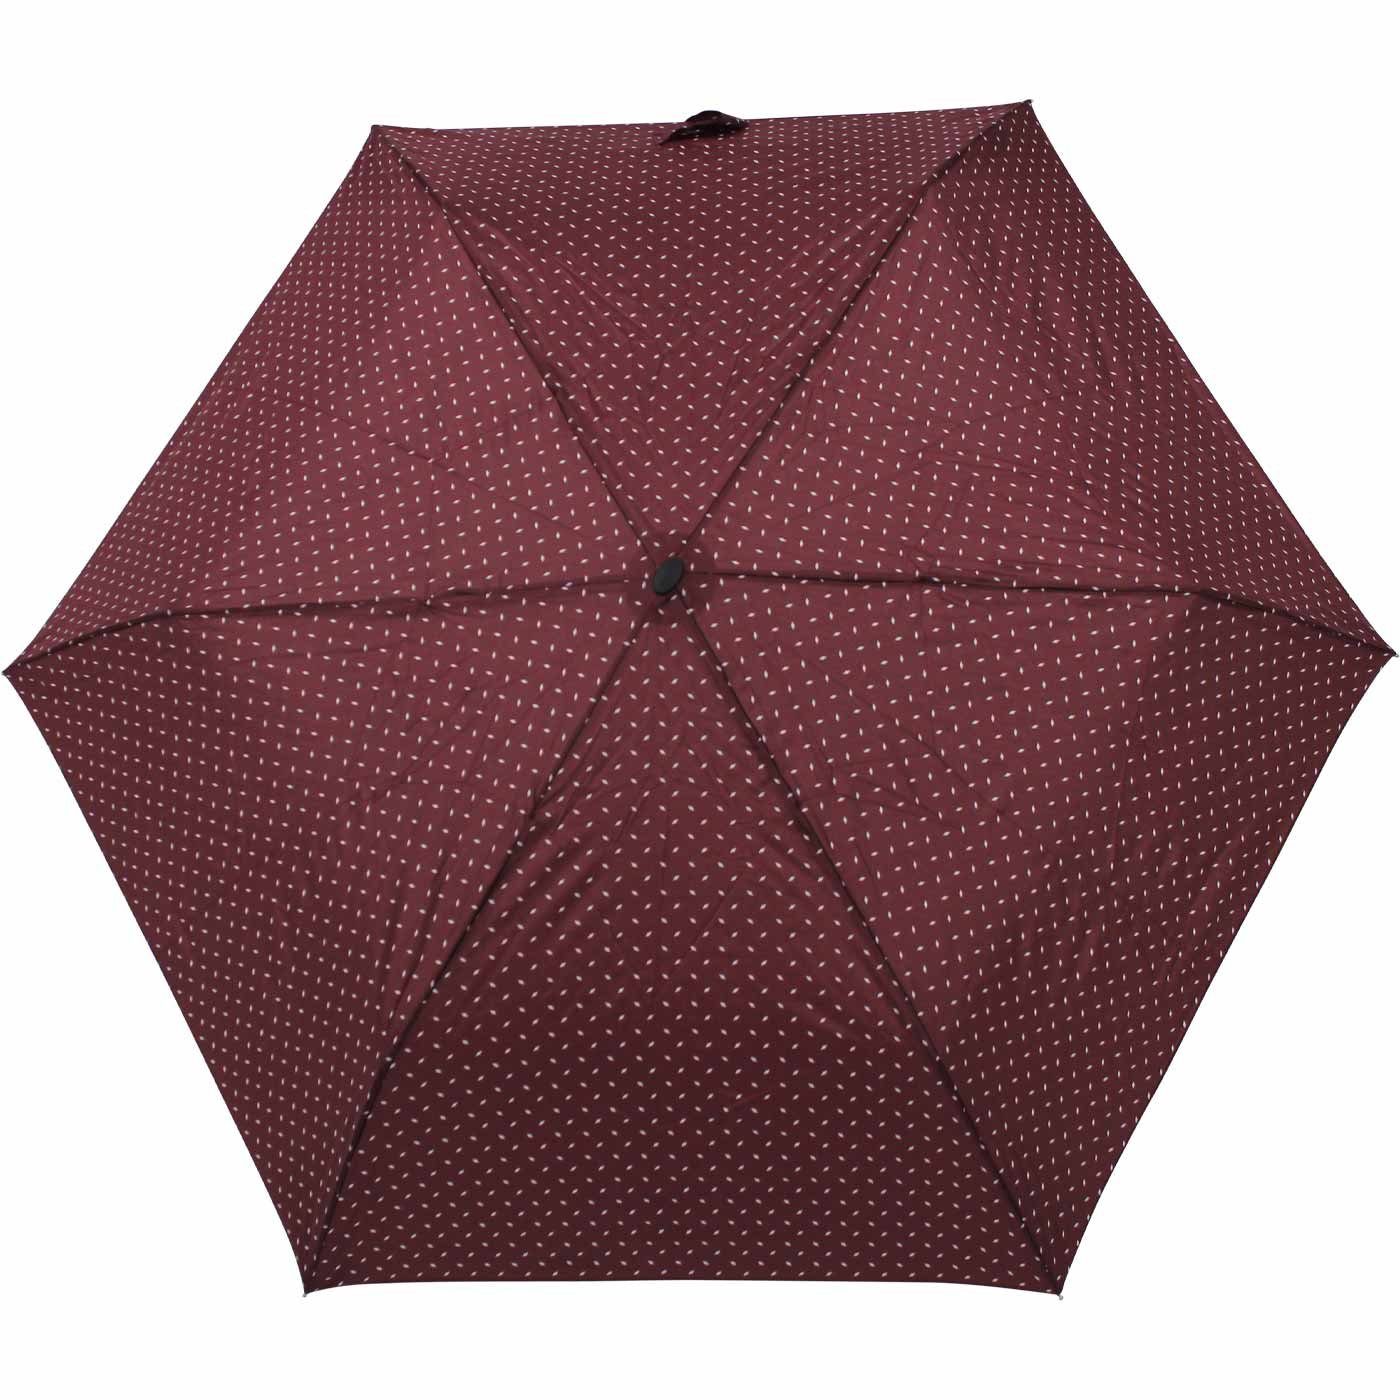 für flacher und dieser treue doppler® leichter ein Platz jede findet Schirm Tasche, bordeaux Begleiter Taschenregenschirm überall